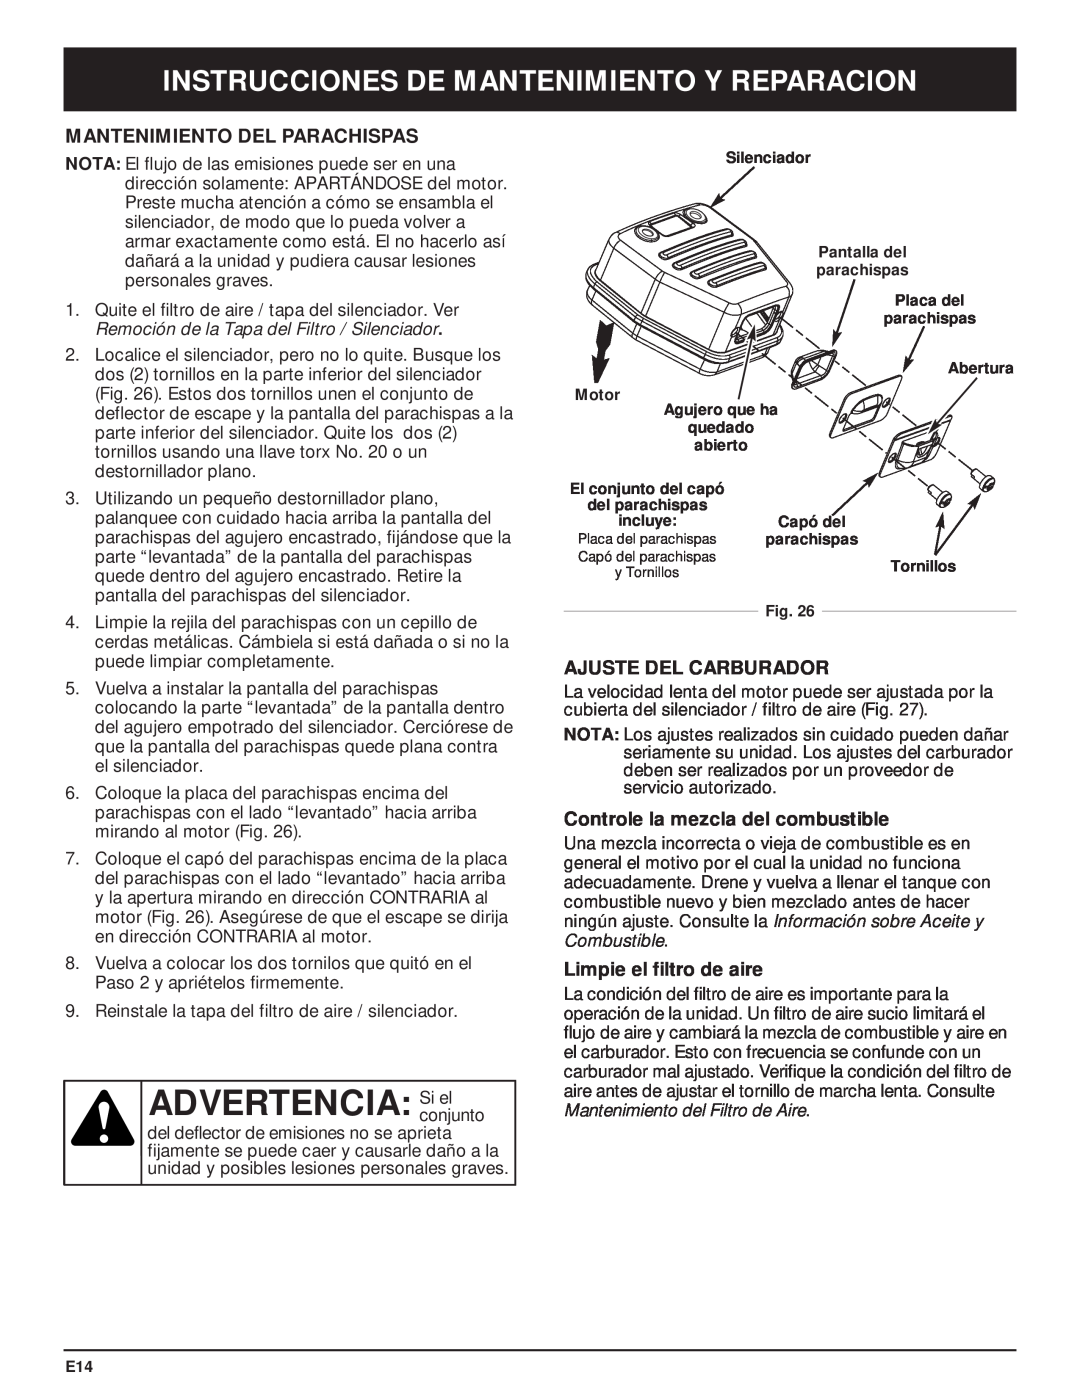 MTD MT700 manual ADVERTENCIA Siconjuntoel, Mantenimiento Del Parachispas, Ajuste Del Carburador, Limpie el filtro de aire 